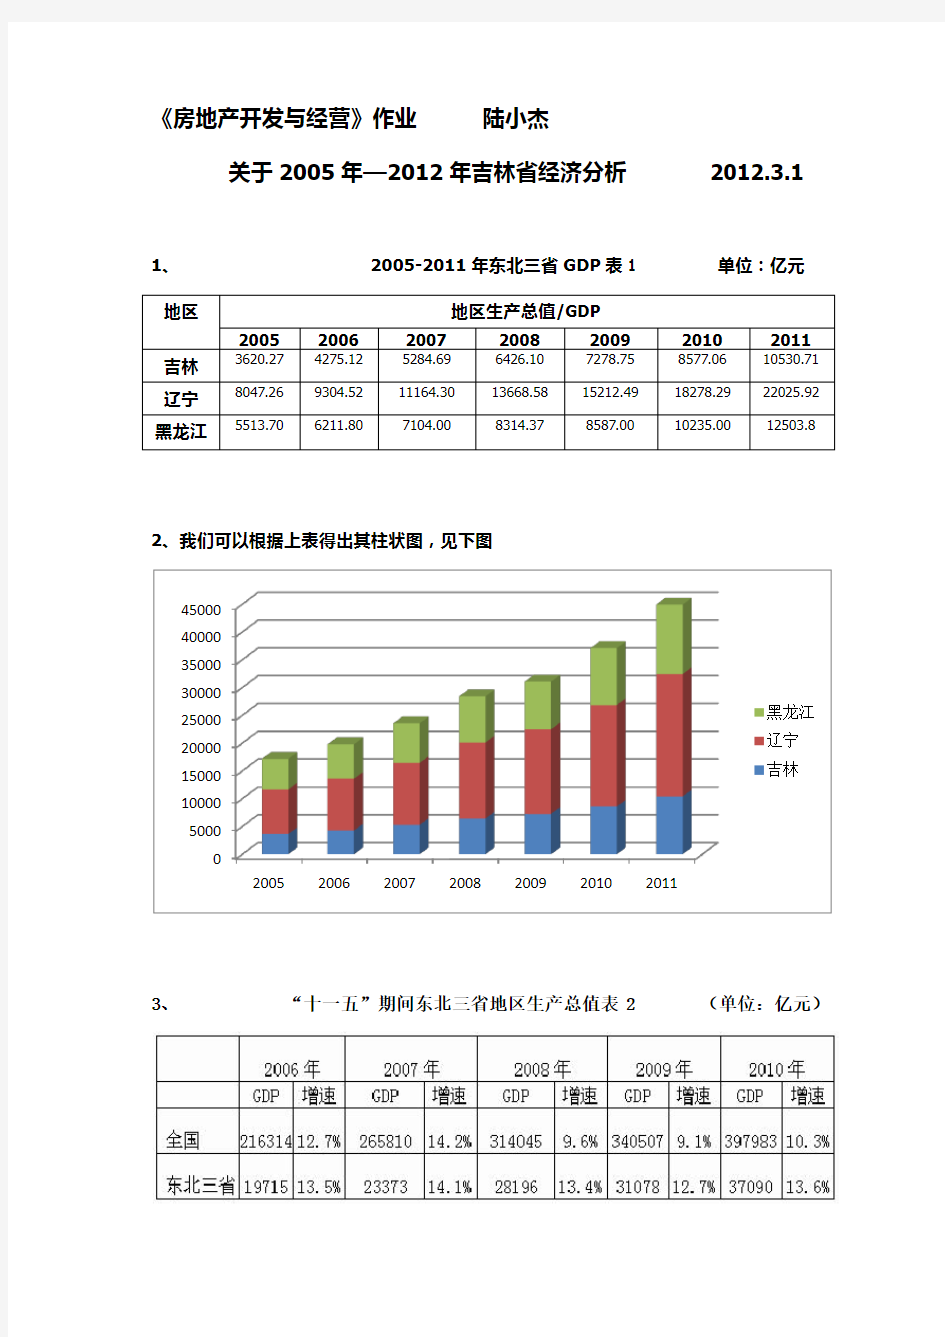 吉林省和长春市205年—2012年经济(GDP)分析